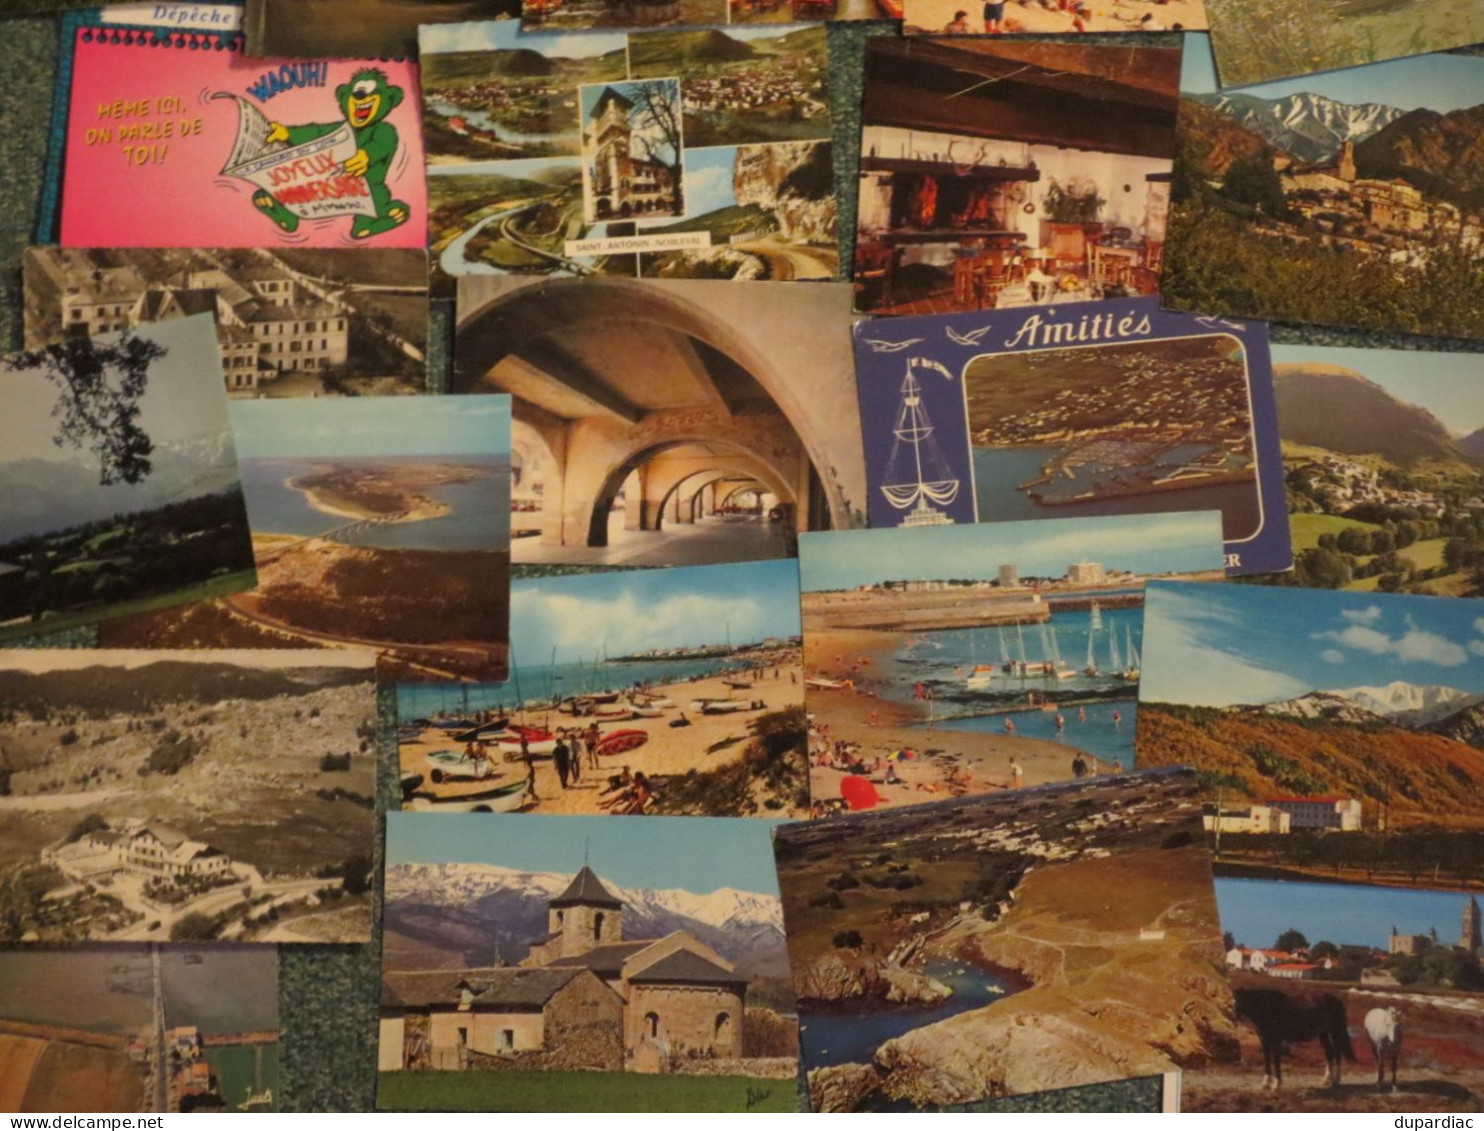 LOT de 2000 cartes postales de FRANCE, toutes 10,5 x 15 cm.